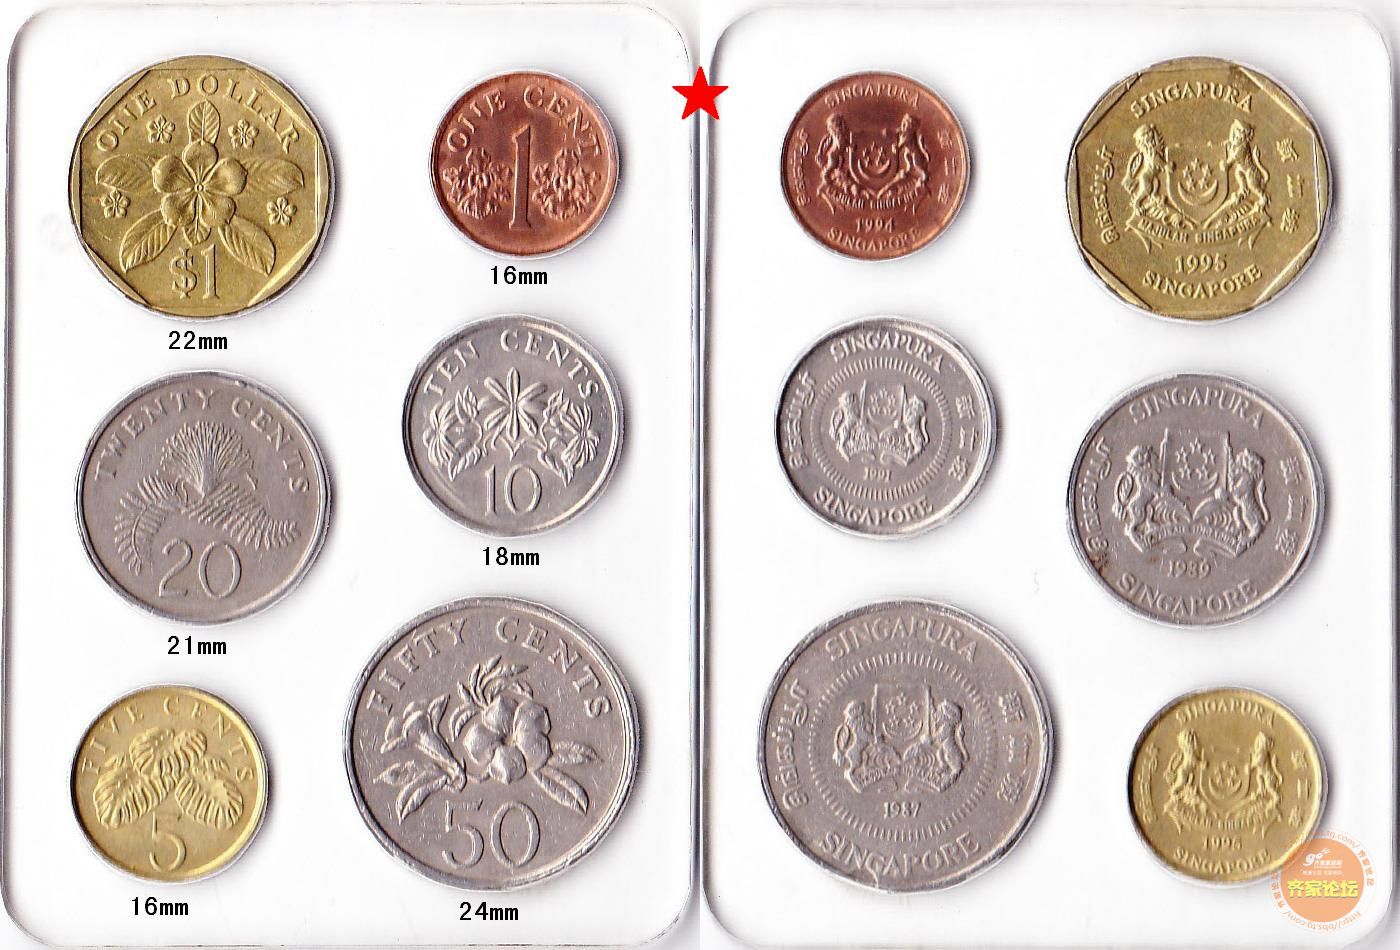 新加坡币面值10元-图库-五毛网